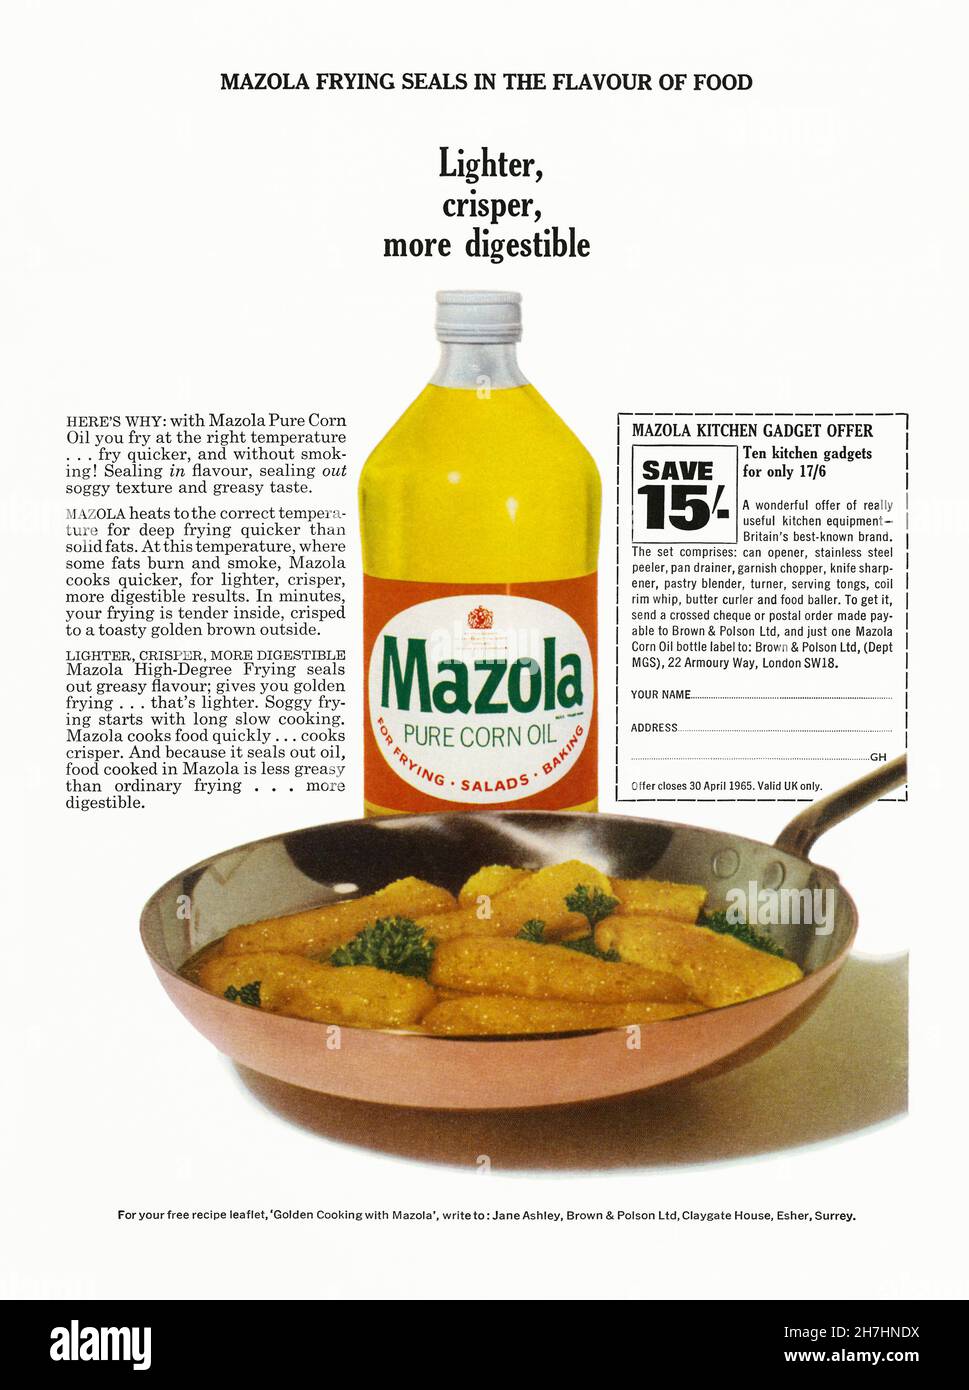 Eine Anzeige von 1960s für reines Maisöl von Mazola. Die Anzeige erschien in einer Zeitschrift, die im März 1965 in Großbritannien veröffentlicht wurde. Die Anzeige zeigt ein Foto des Produkts, das zum Frittieren einiger Krabben verwendet wurde, und hebt die leichteren und verdaulichen Eigenschaften des Öls sowie seine Vorteile gegenüber der Verwendung fester Fette hervor. Es wurde von Brown and Polson Ltd hergestellt – Vintage 1960s Grafiken für die redaktionelle Verwendung. Stockfoto